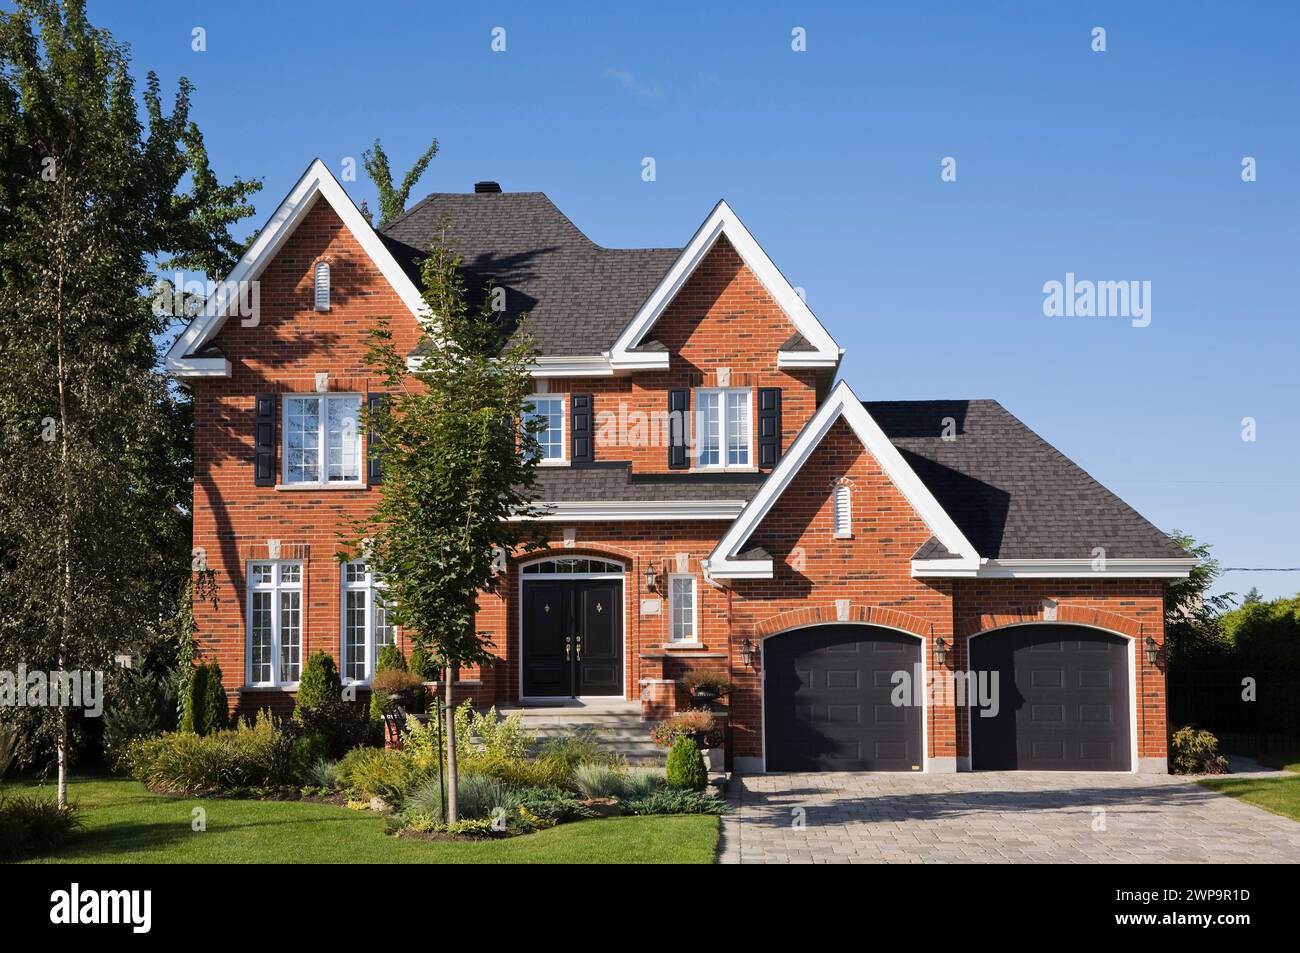 Maison haut de gamme de deux étages en briques rouges et noires avec garage pour deux voitures, allée en pierre pavée et cour avant paysagée en été. Banque D'Images